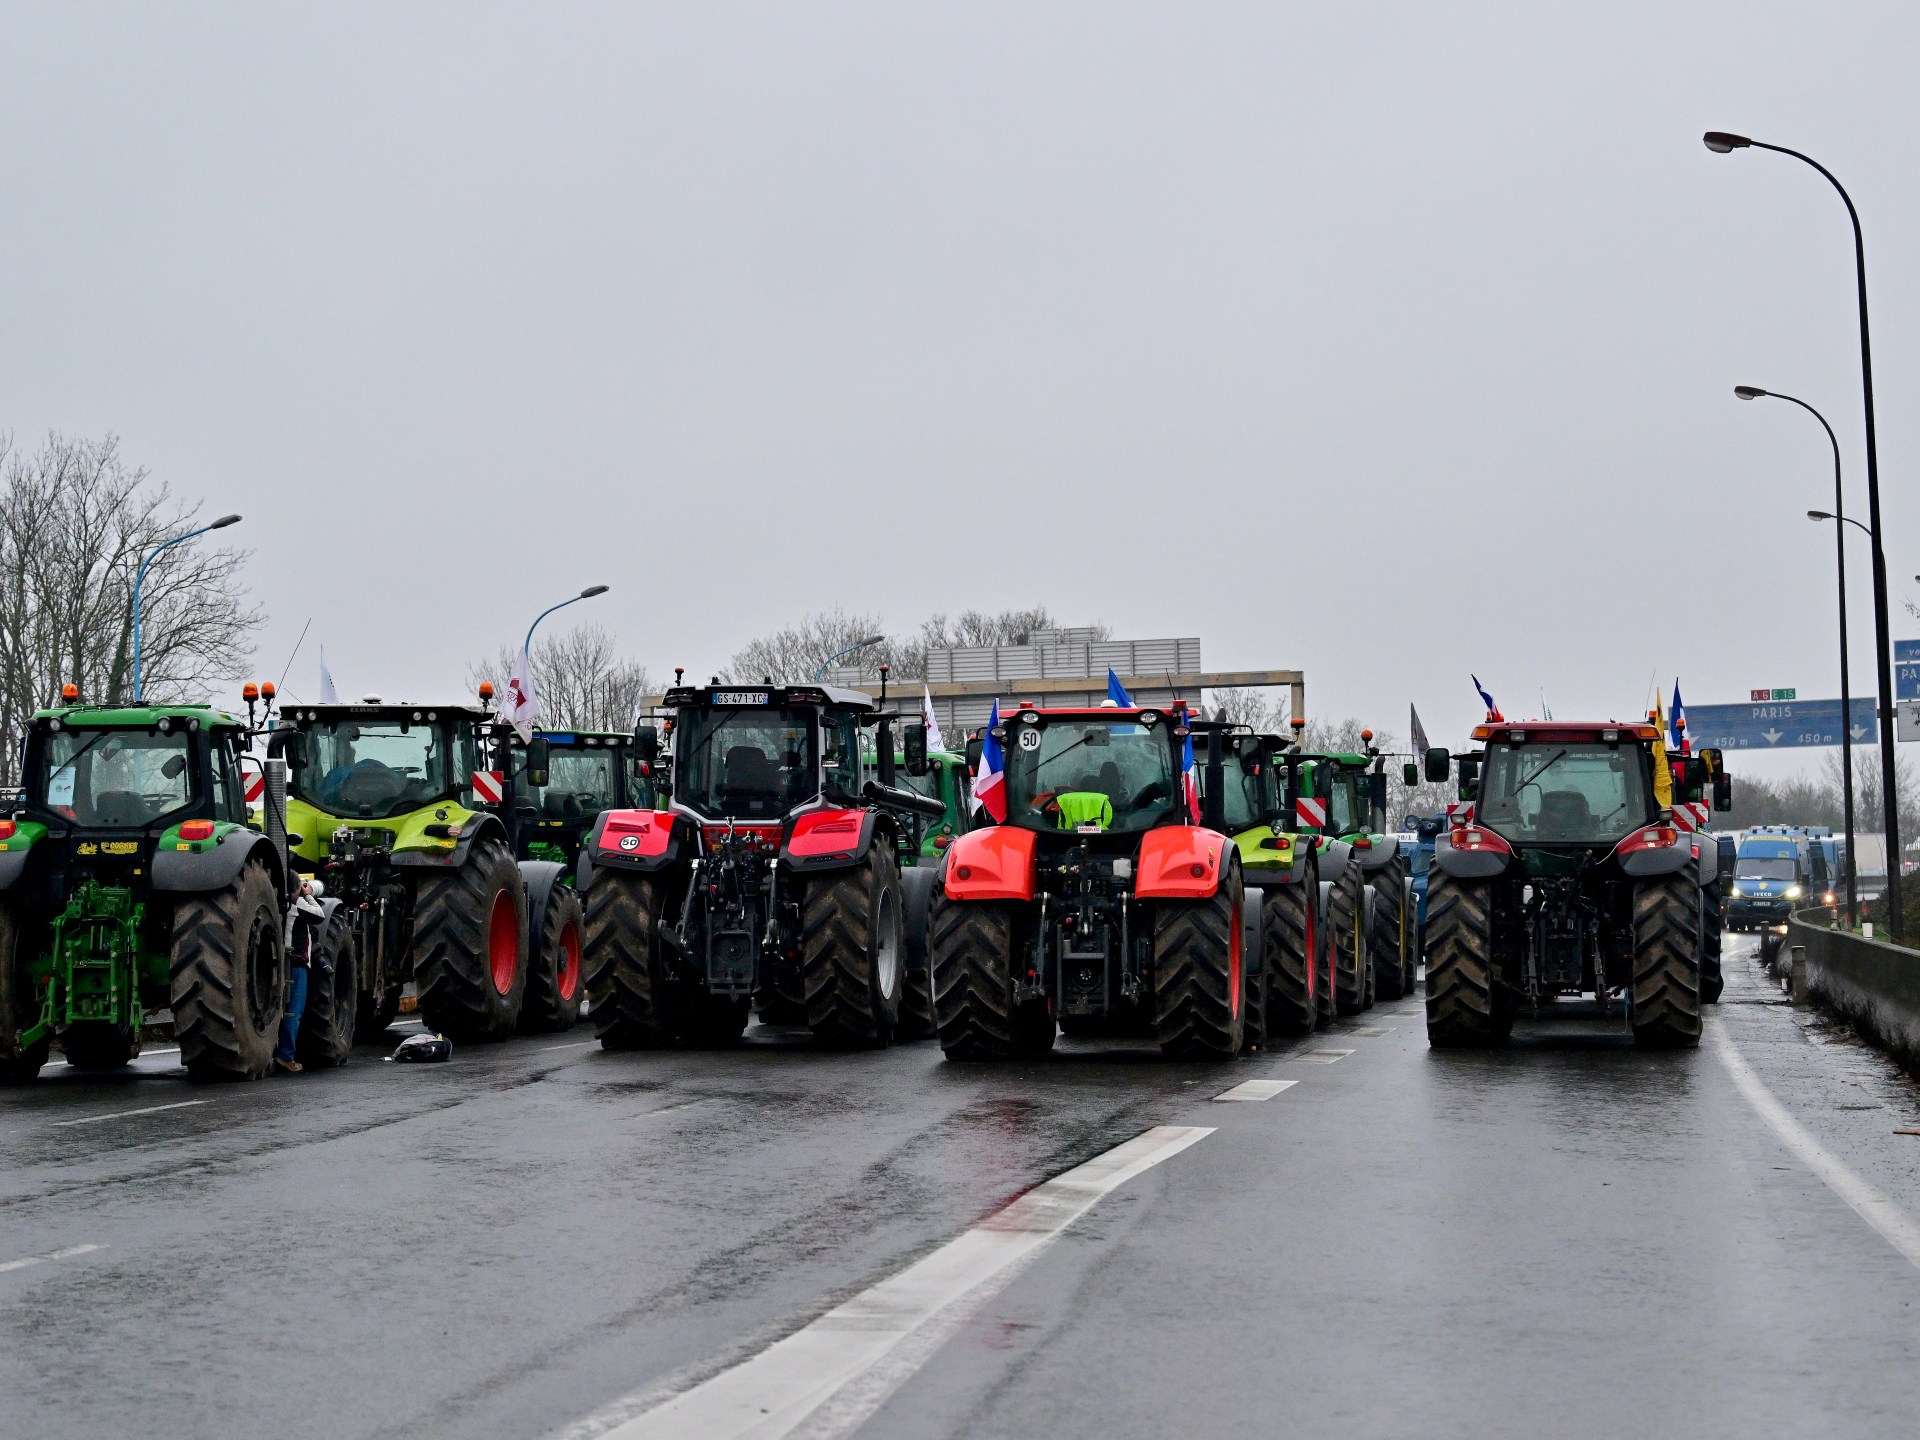 المزارعون ينتقدون المنافسة غير العادلة.. فهل يستطيع الفرنسيون دفع الثمن؟ | اقتصاد – البوكس نيوز